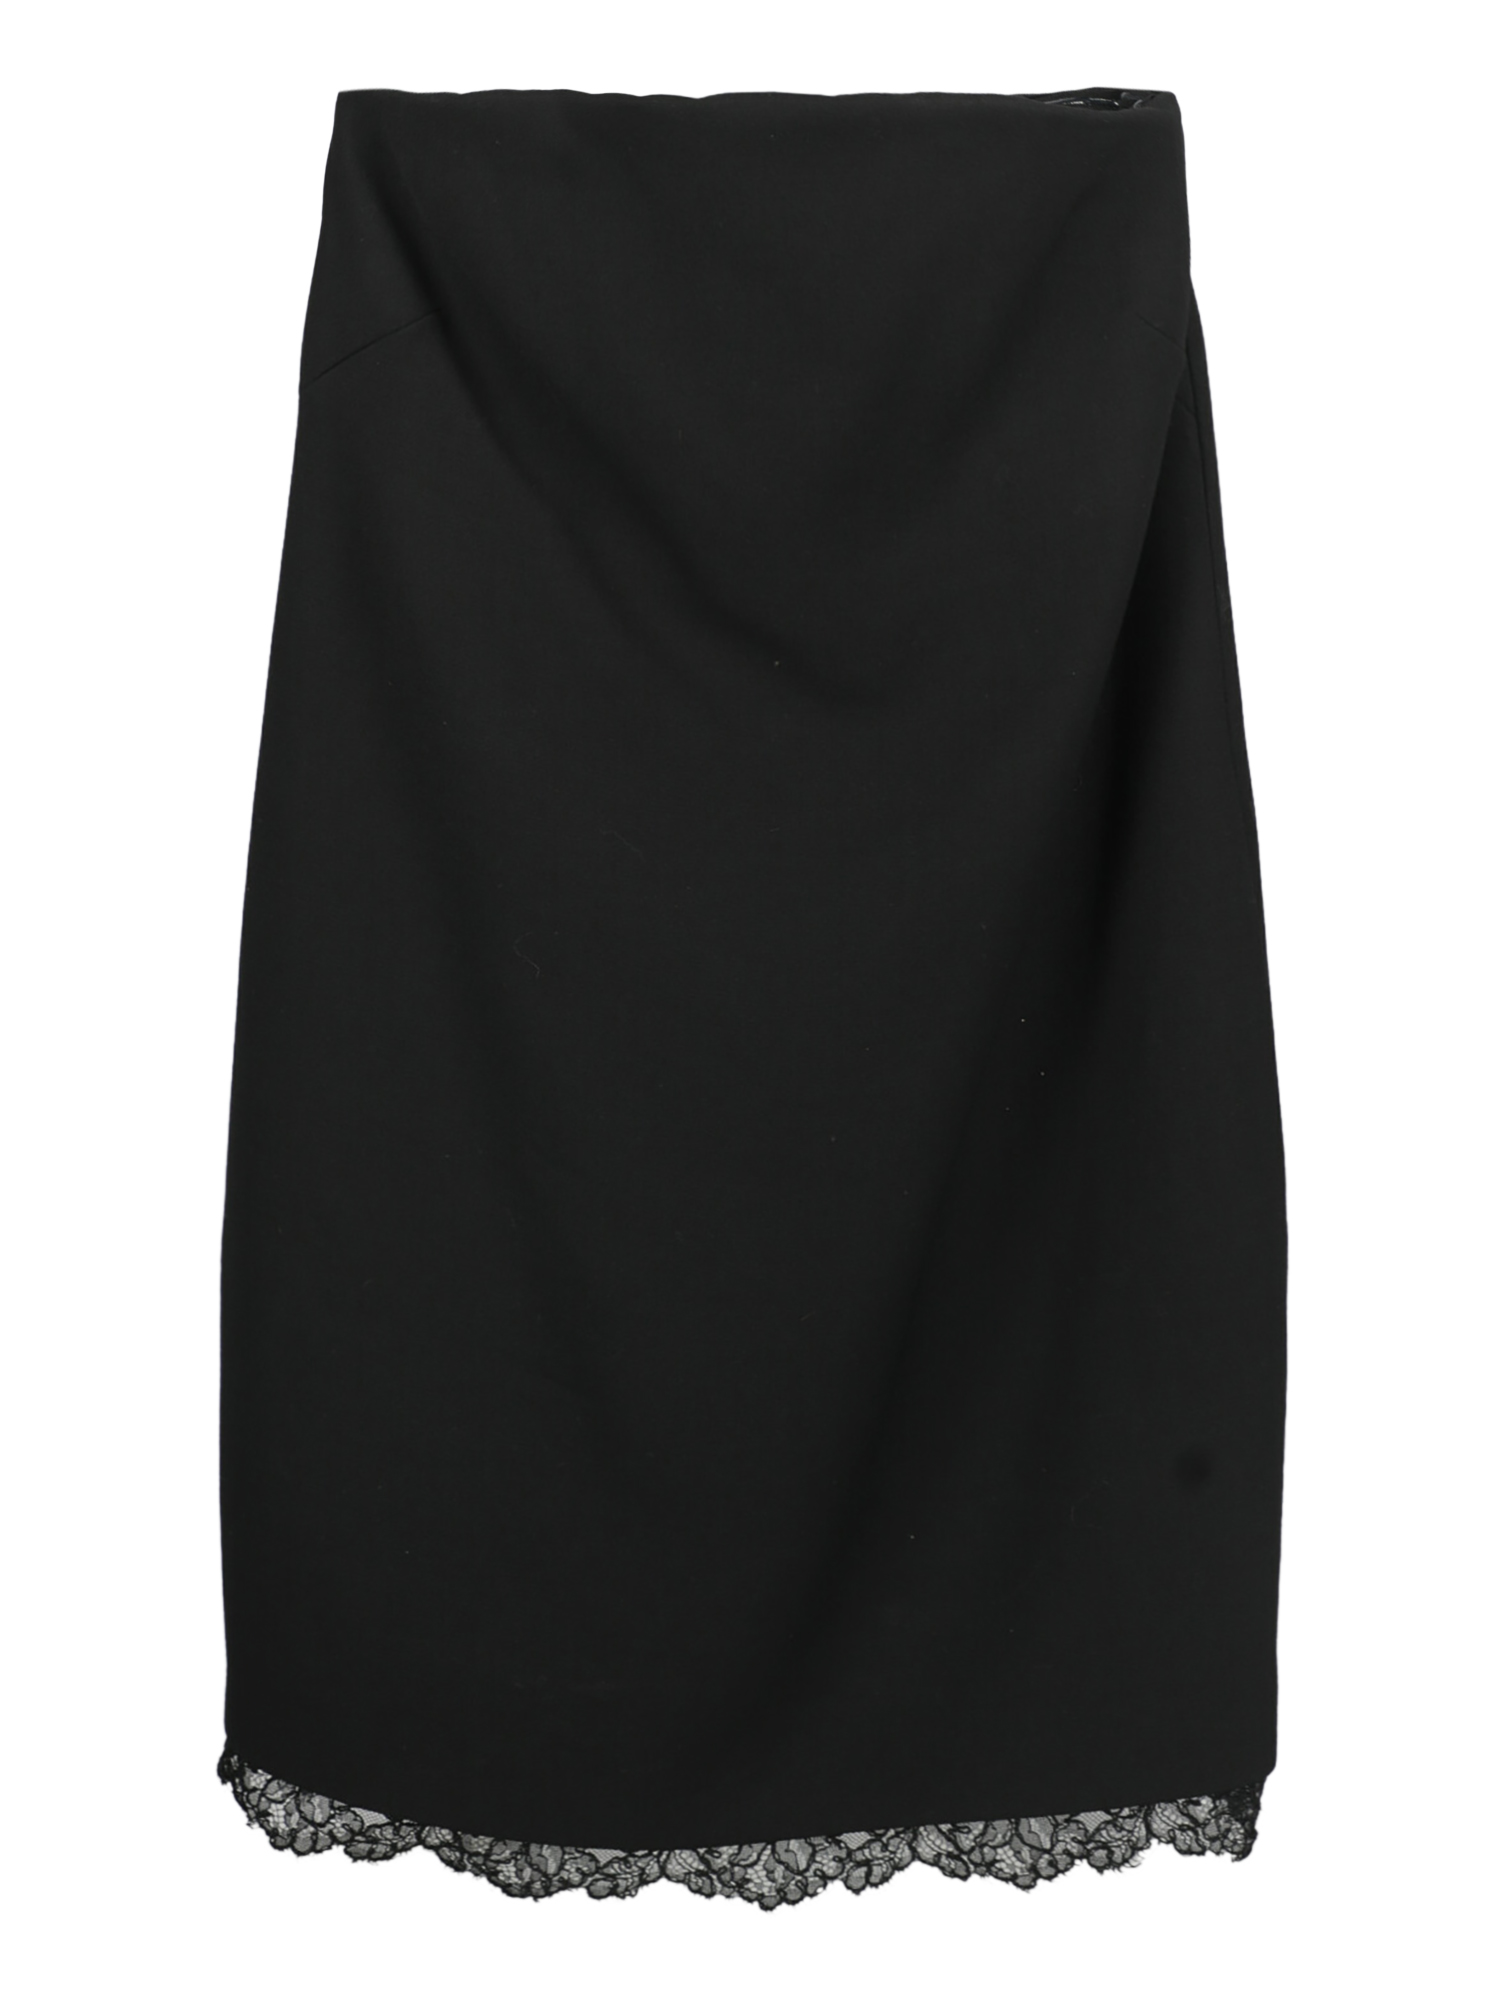 Robes Pour Femme - Philosophy - En Synthetic Fibers Black - Taille:  -